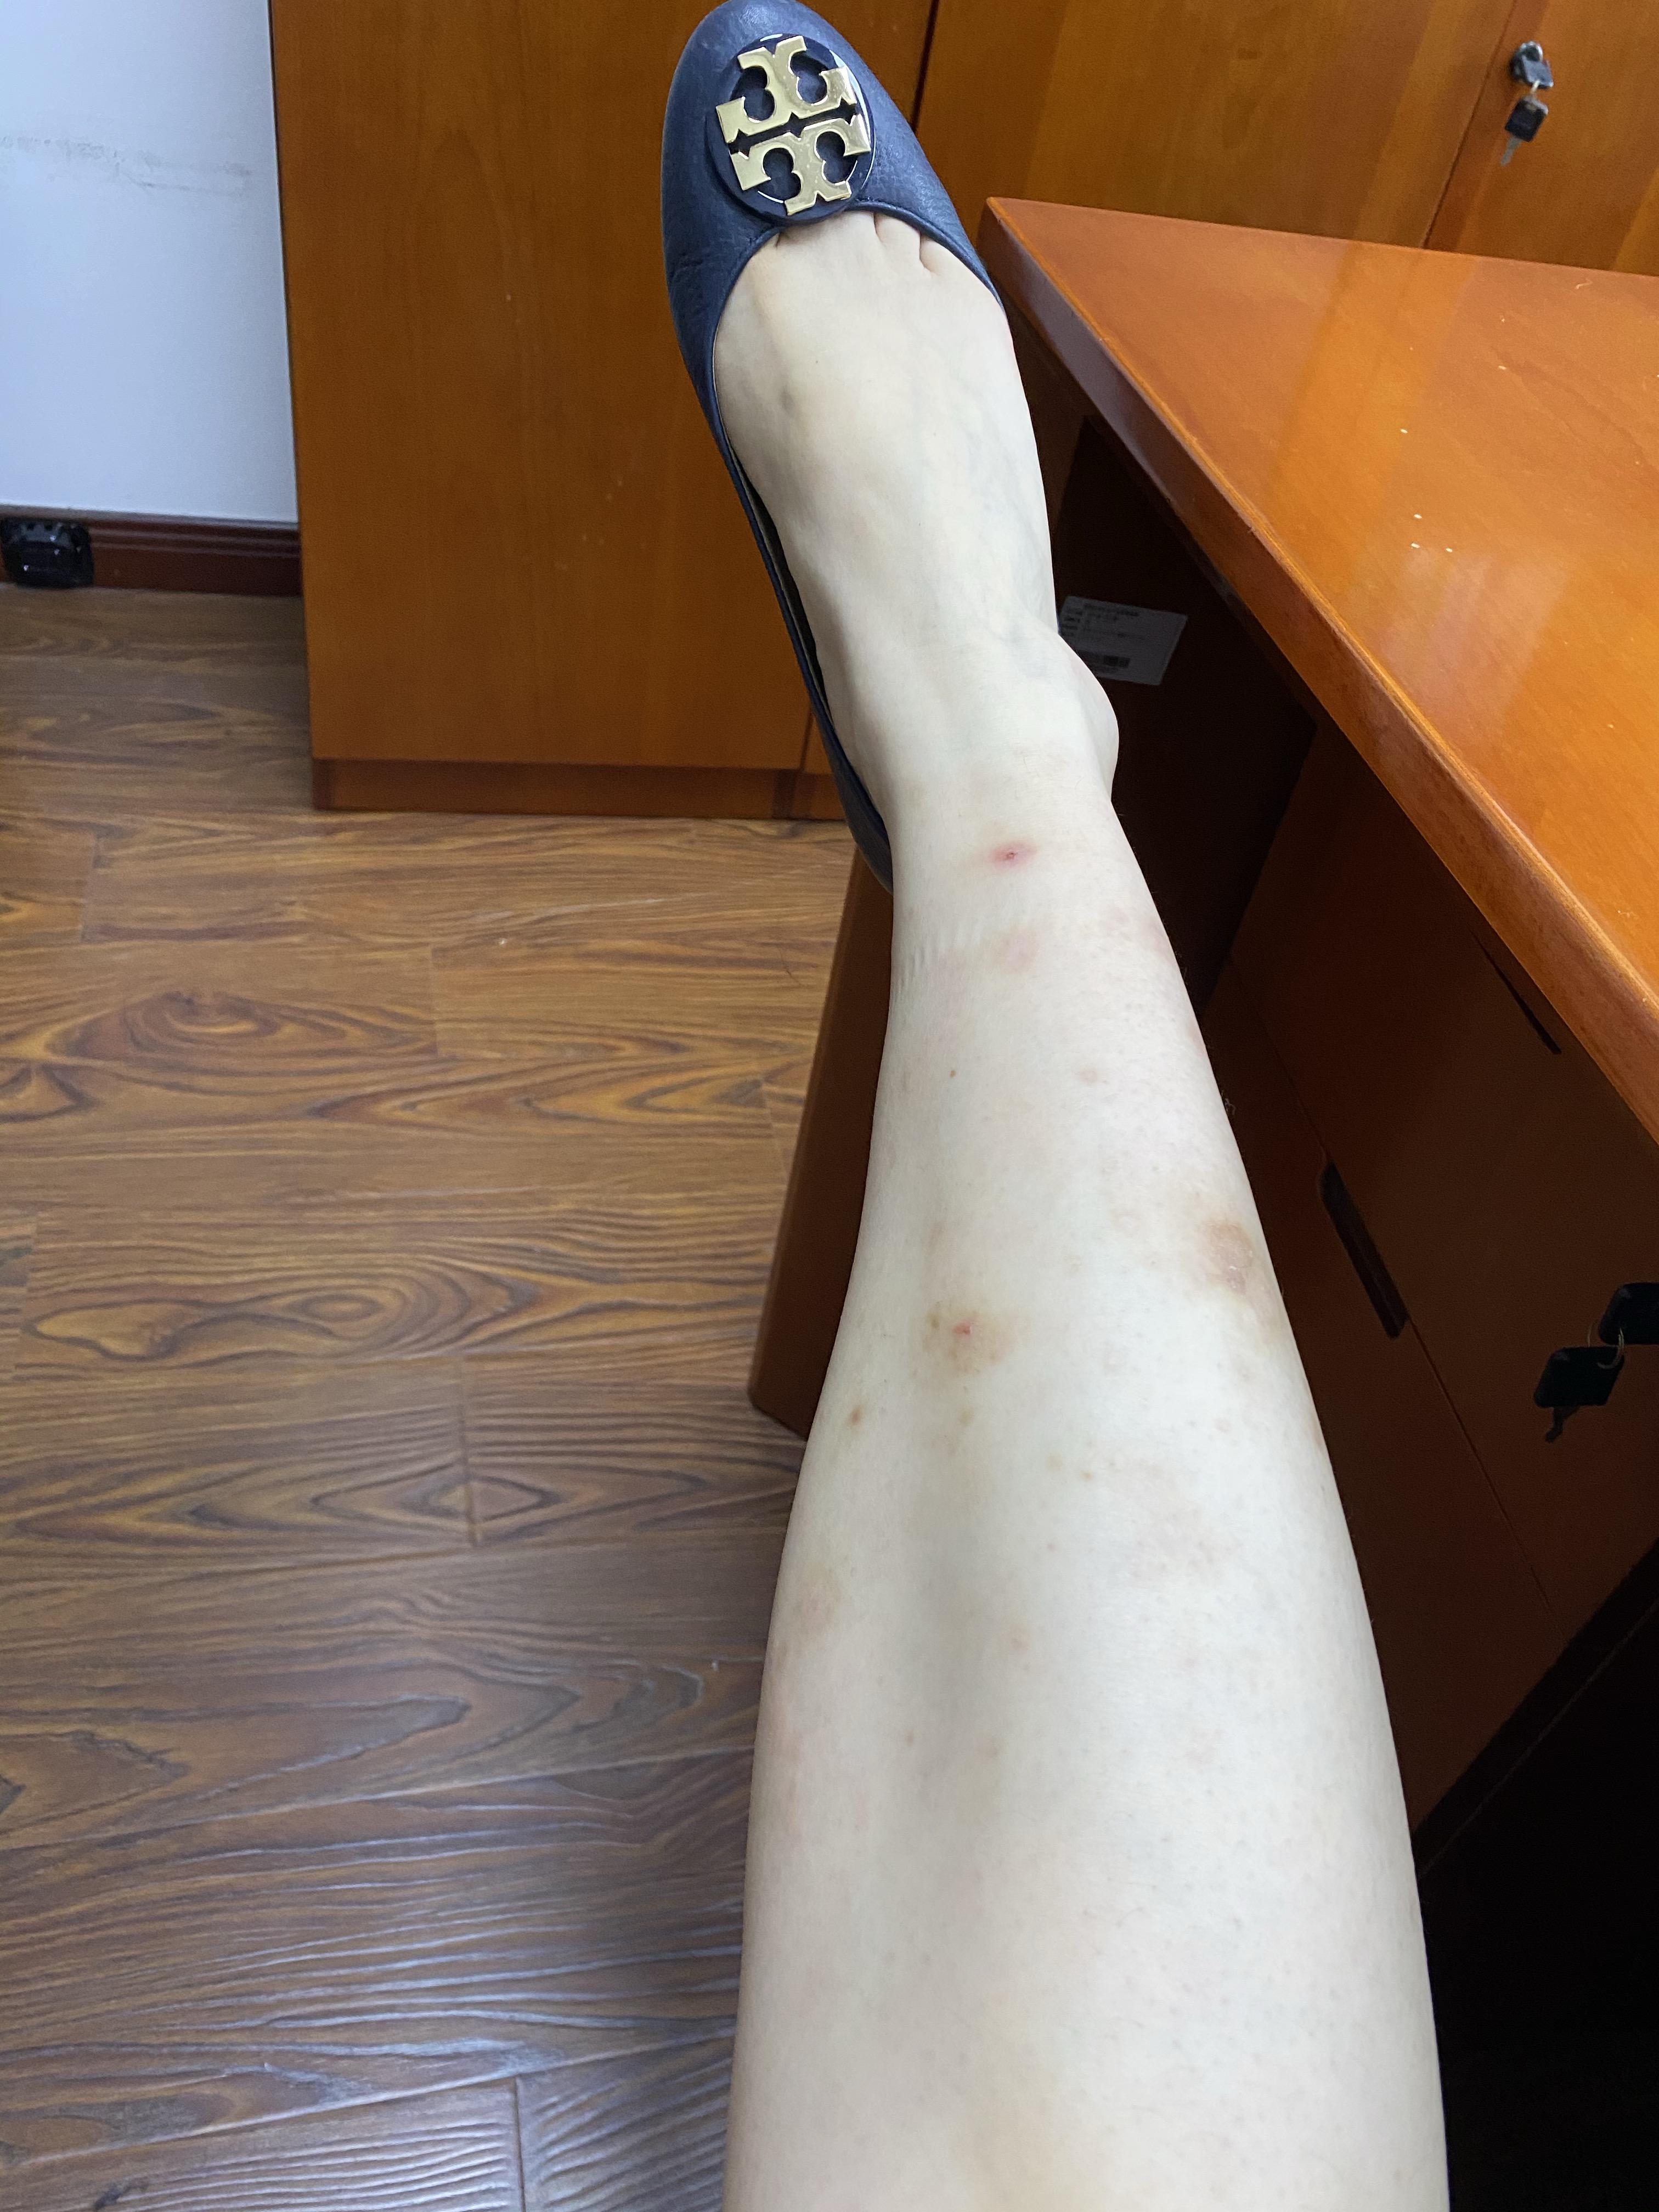 我是女生腿上手上都有难看的疤痕从小到大蚊子一咬就留疤基本不敢穿超